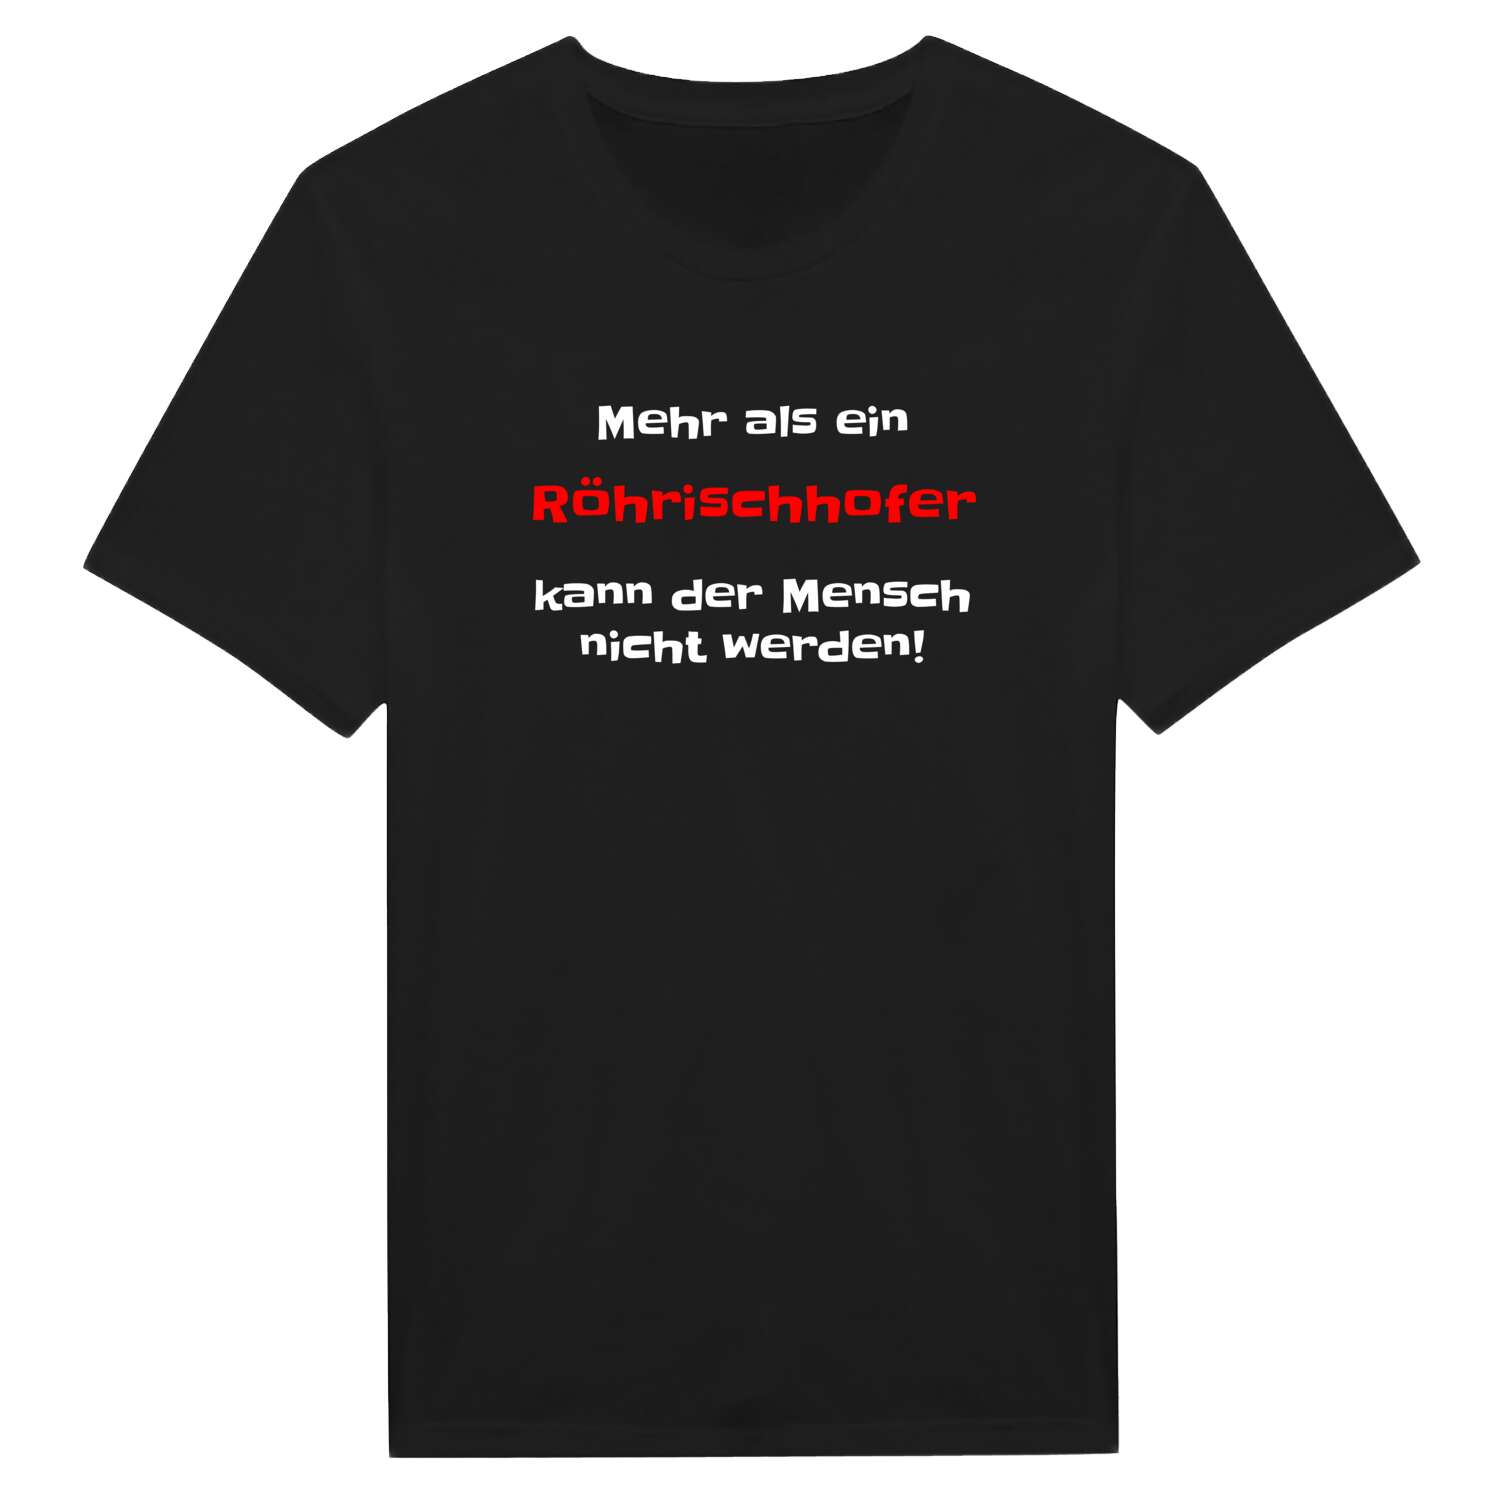 Röhrischhof T-Shirt »Mehr als ein«